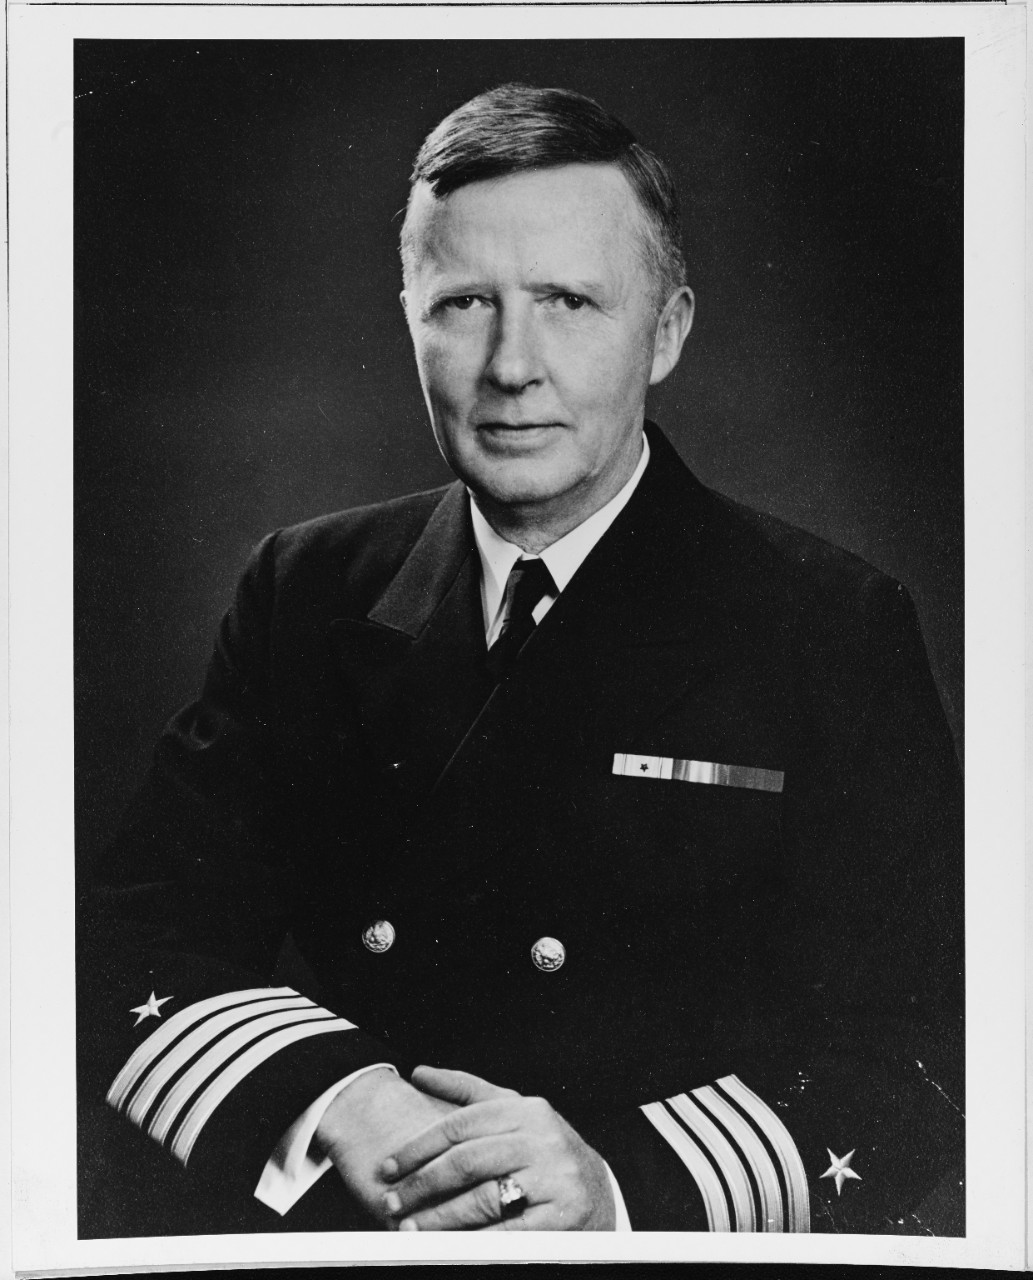 Captain William Callender Irvine Stiles (1886-1945), USN (Ret)